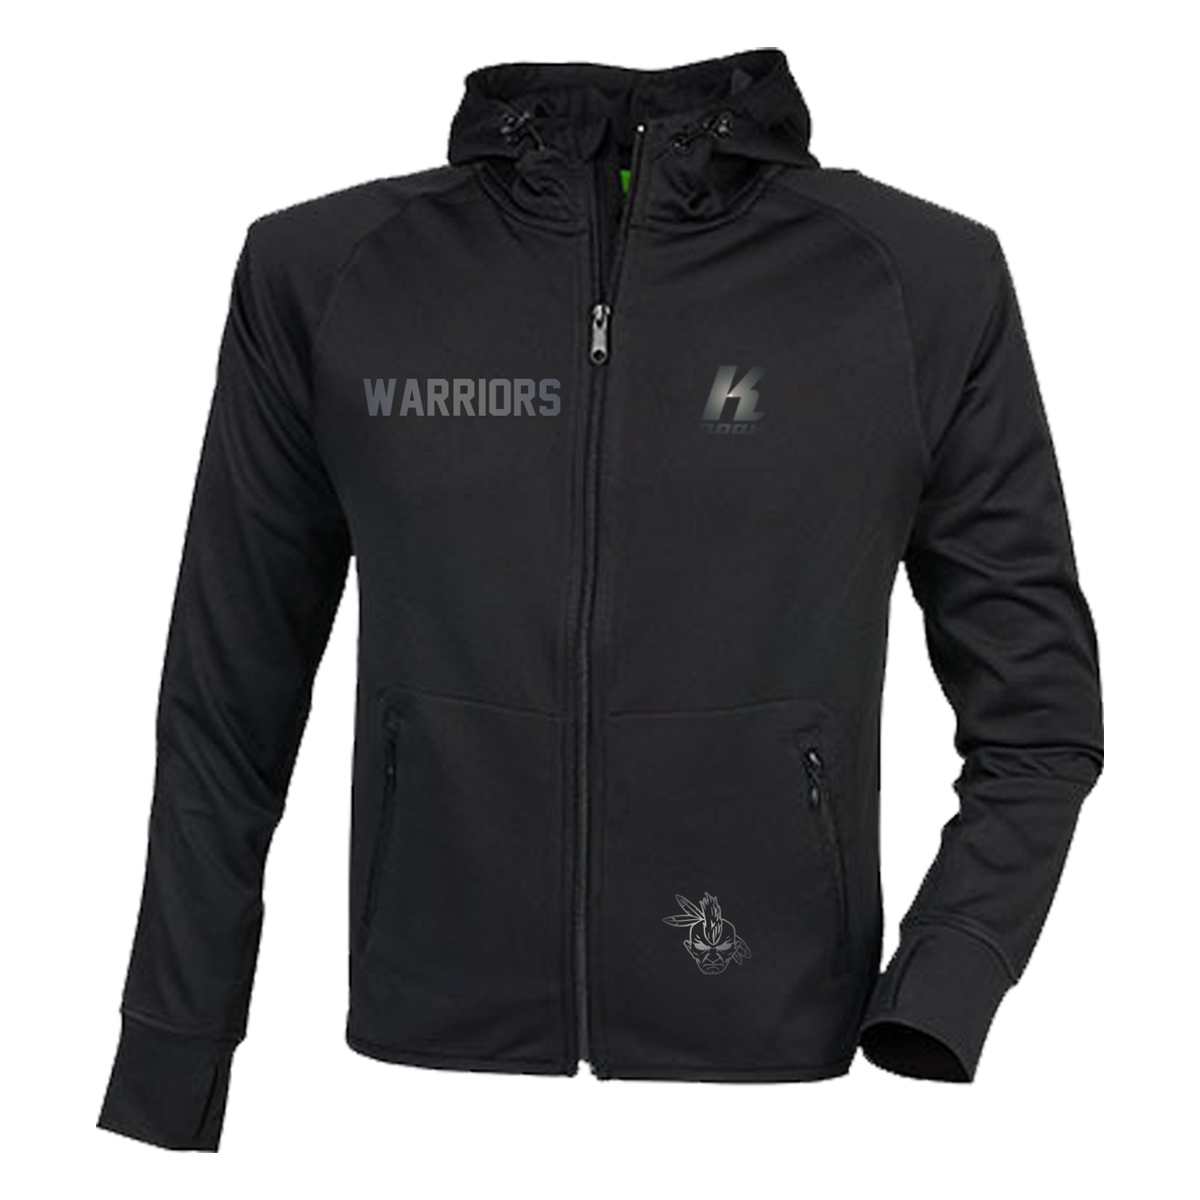 Warriors "Blackline" Zip Hoodie TL550